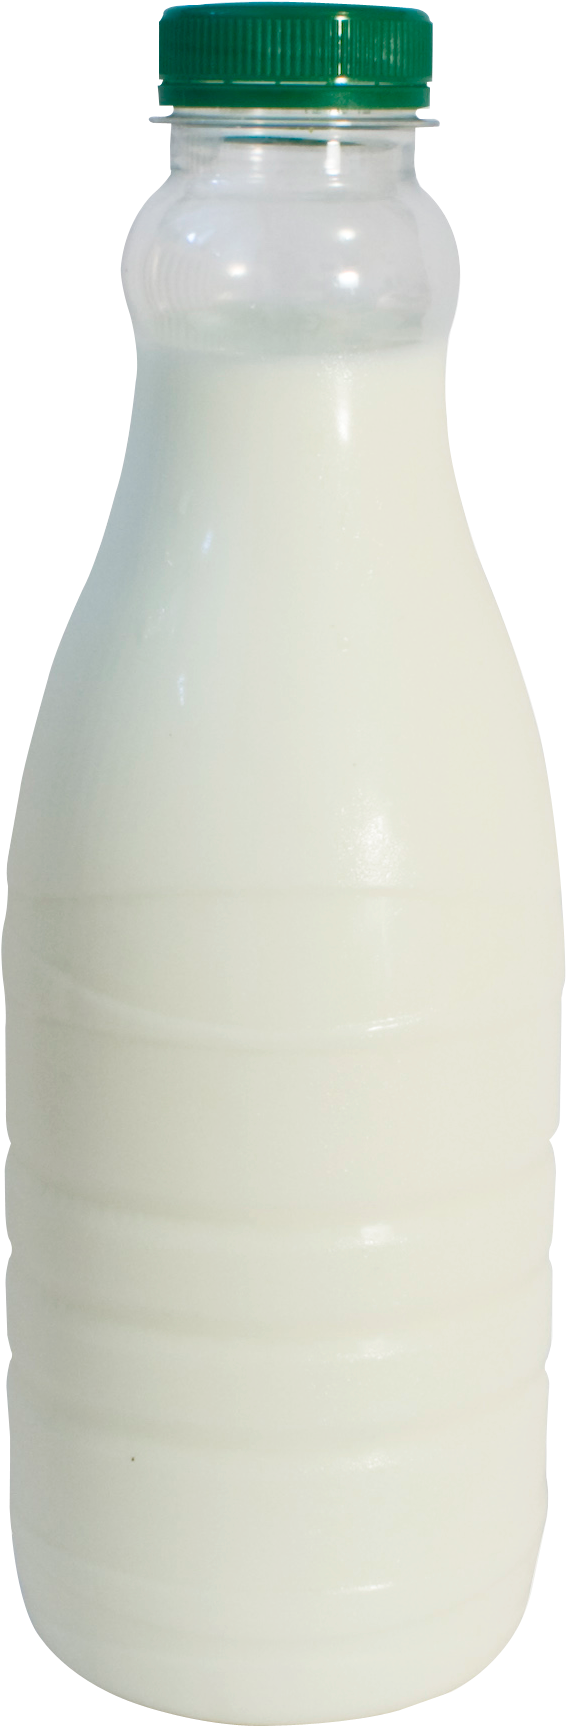 Download Milk Bottle Png Transparent Image - Milk Bottle Pic Png Clipart (500x900), Png Download